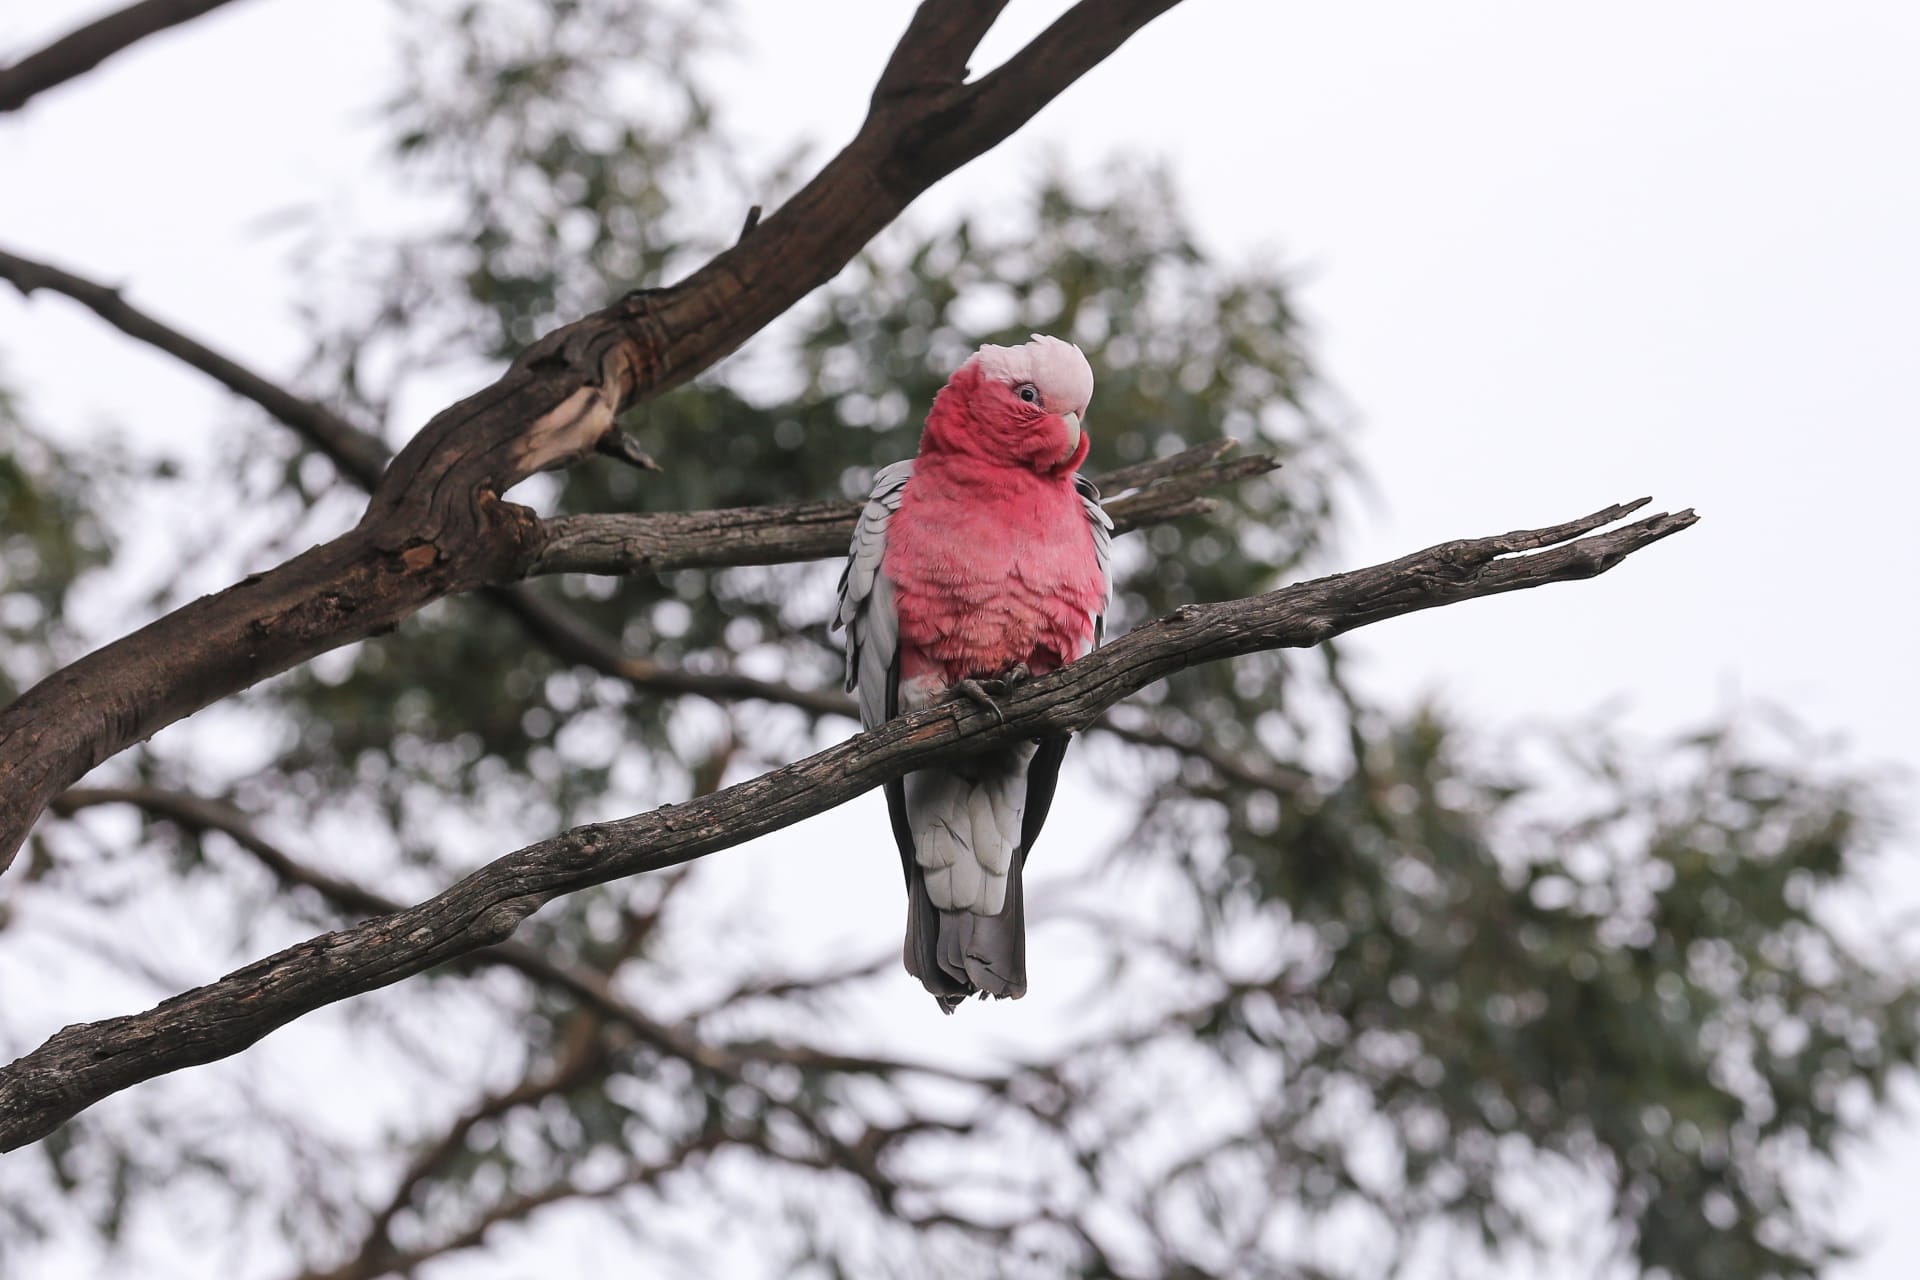 Dnes tento papouščí druh najdeme i v australských městech